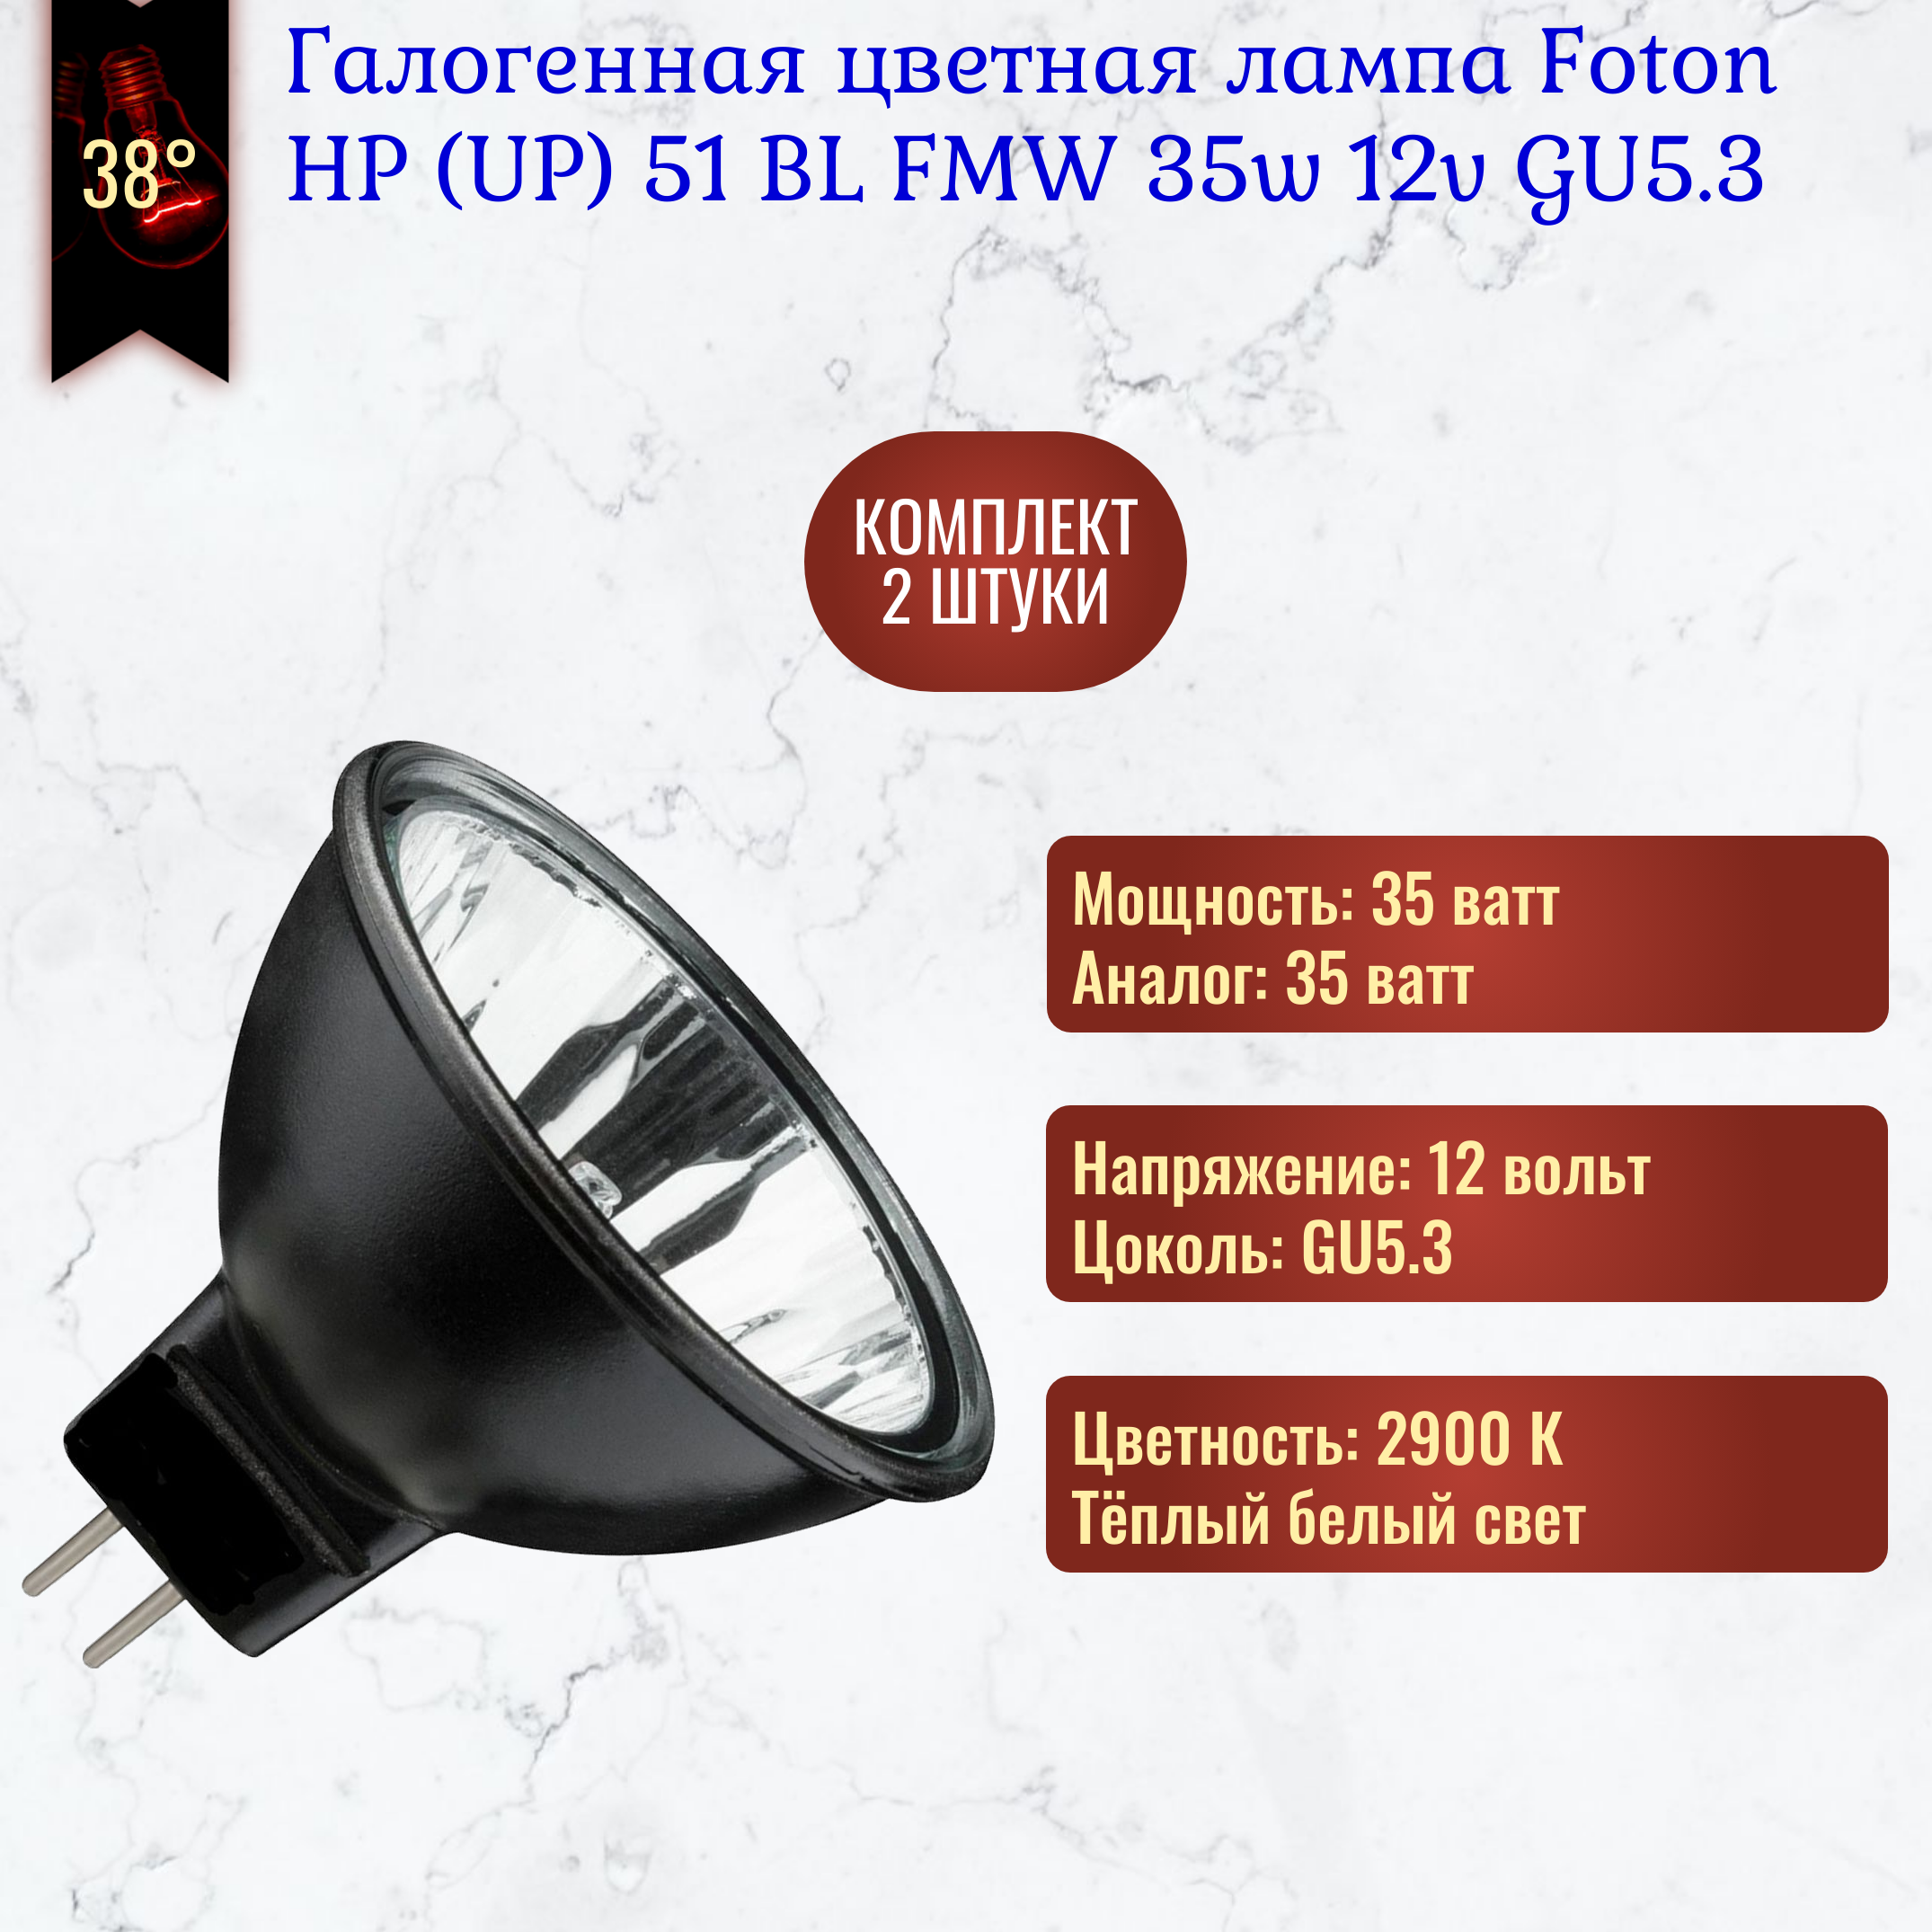 Лампочка Foton UP51 BL 35w 12v GU5.3 Black Reflector галогенная, черный отражатель, теплый белый свет / 2 штуки